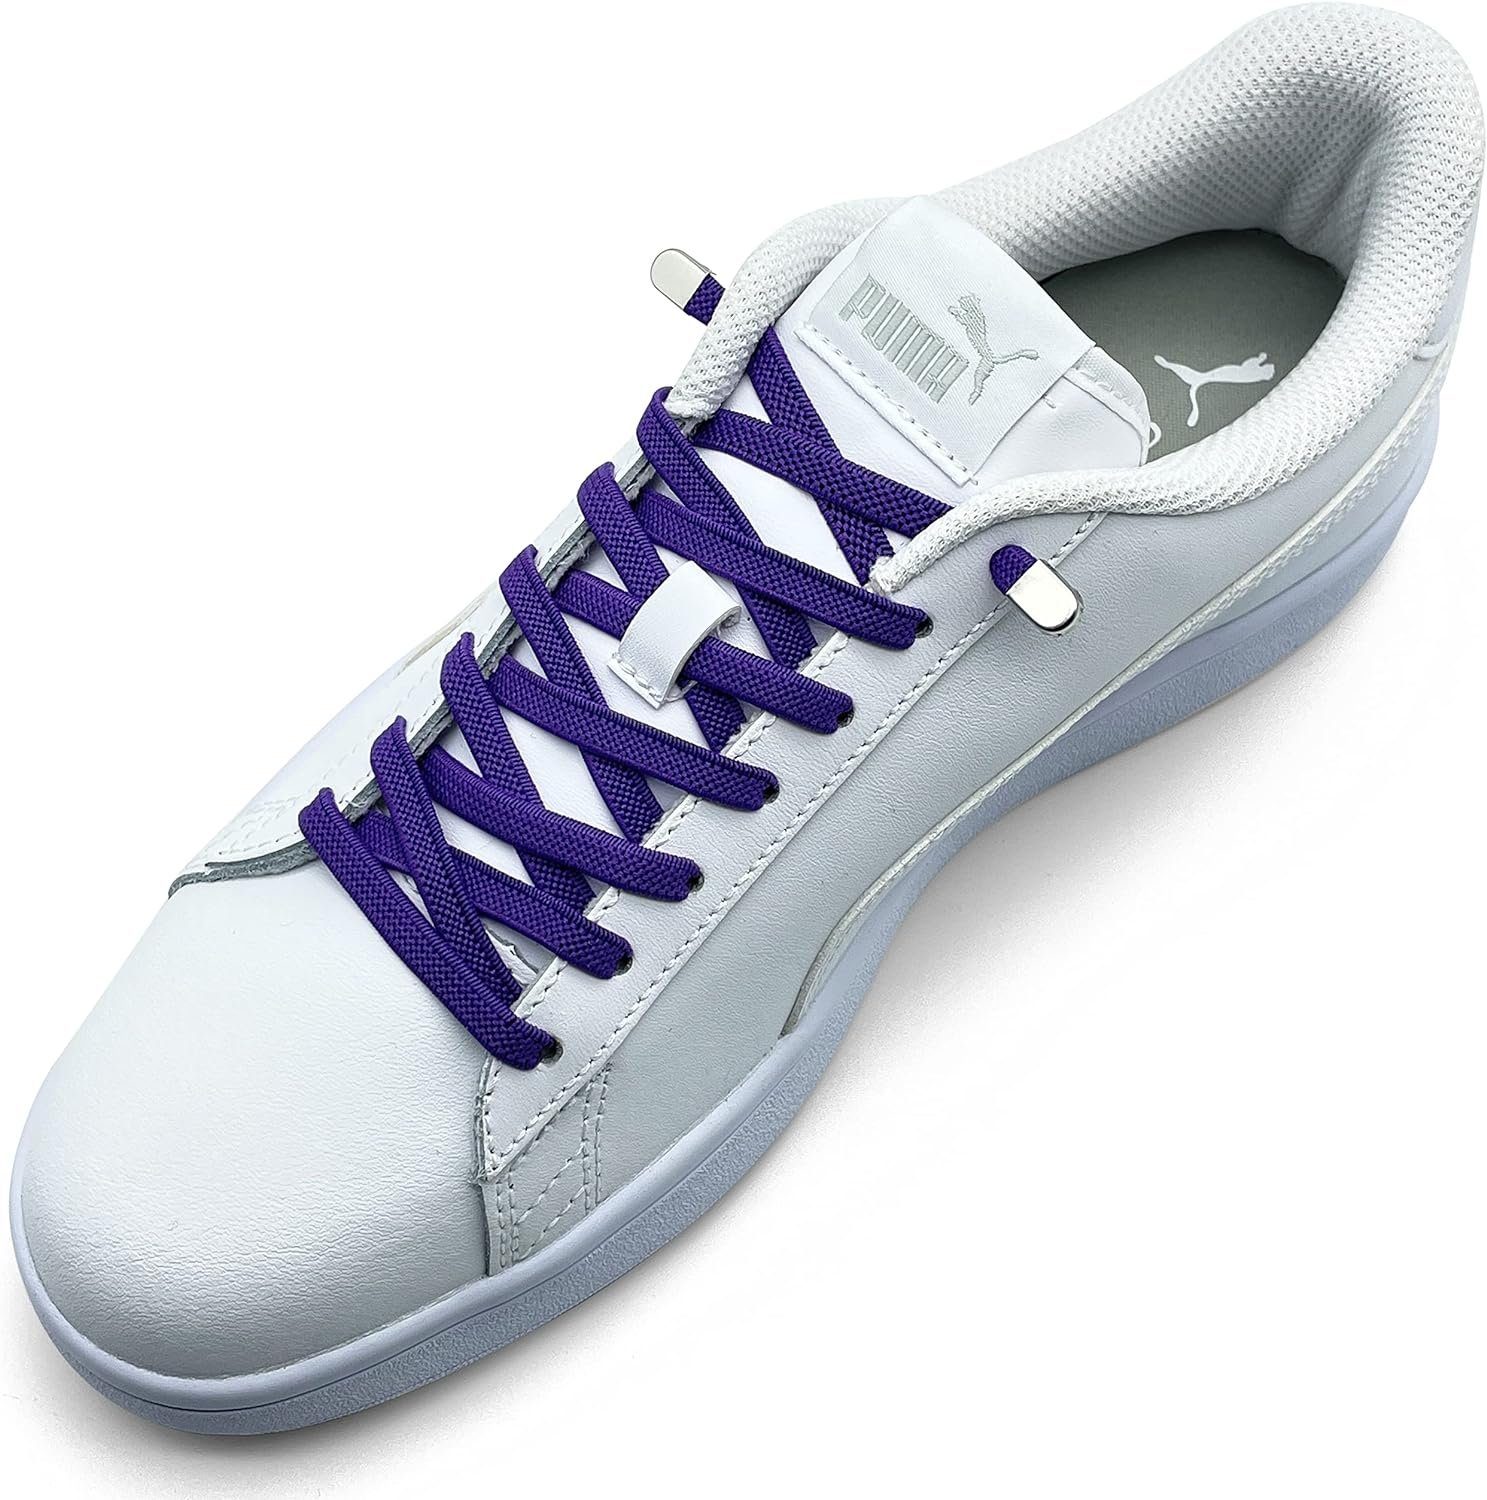 ELANOX Schnürsenkel 4 Stück für 2 Paar Schuhe elastische Schnürsenkel mit Clips, inkl. Enden (Clips) - 8 St. in silber purple